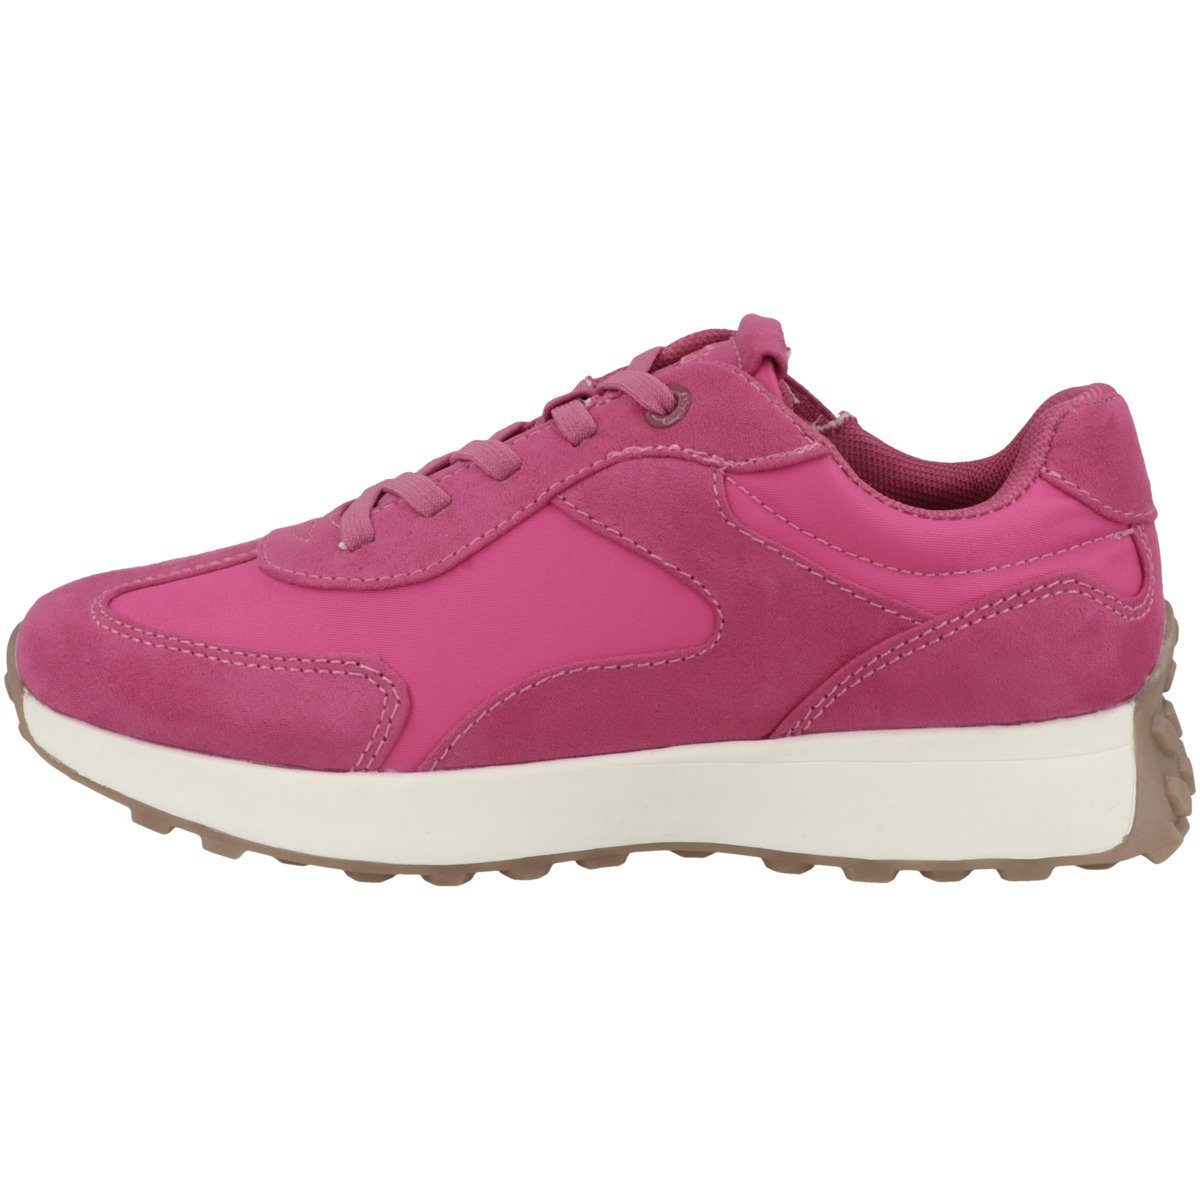 s.Oliver 5-43208-30 Mädchen Sneaker pink